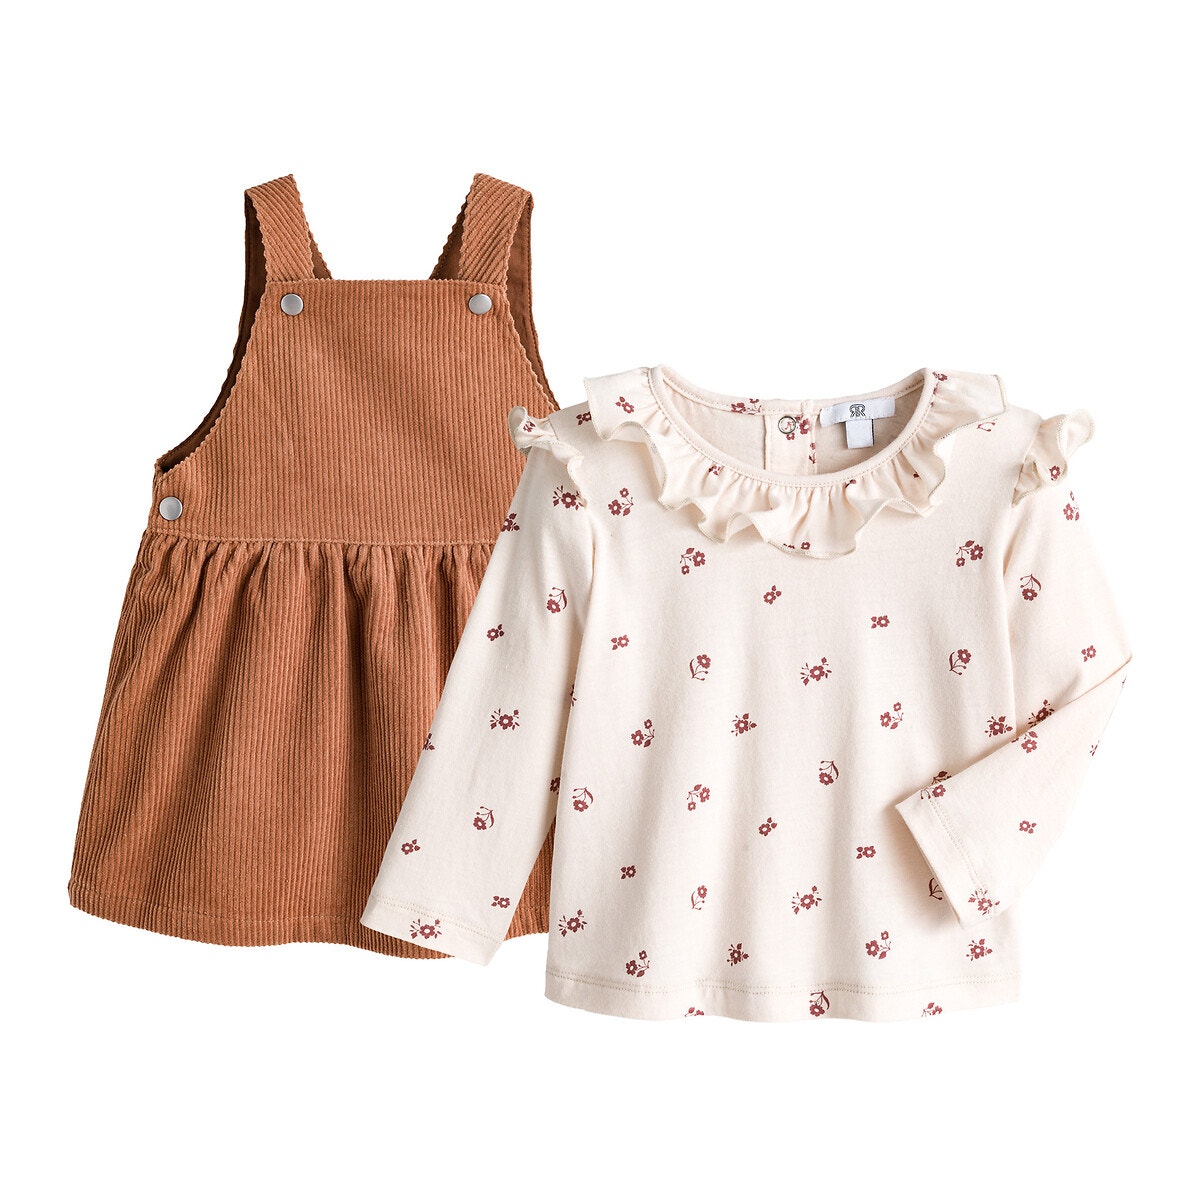 ΠΑΙΔΙ | Παντελόνια Σύνολο φόρεμα και μπλούζα, 3 μηνών - 4 ετών